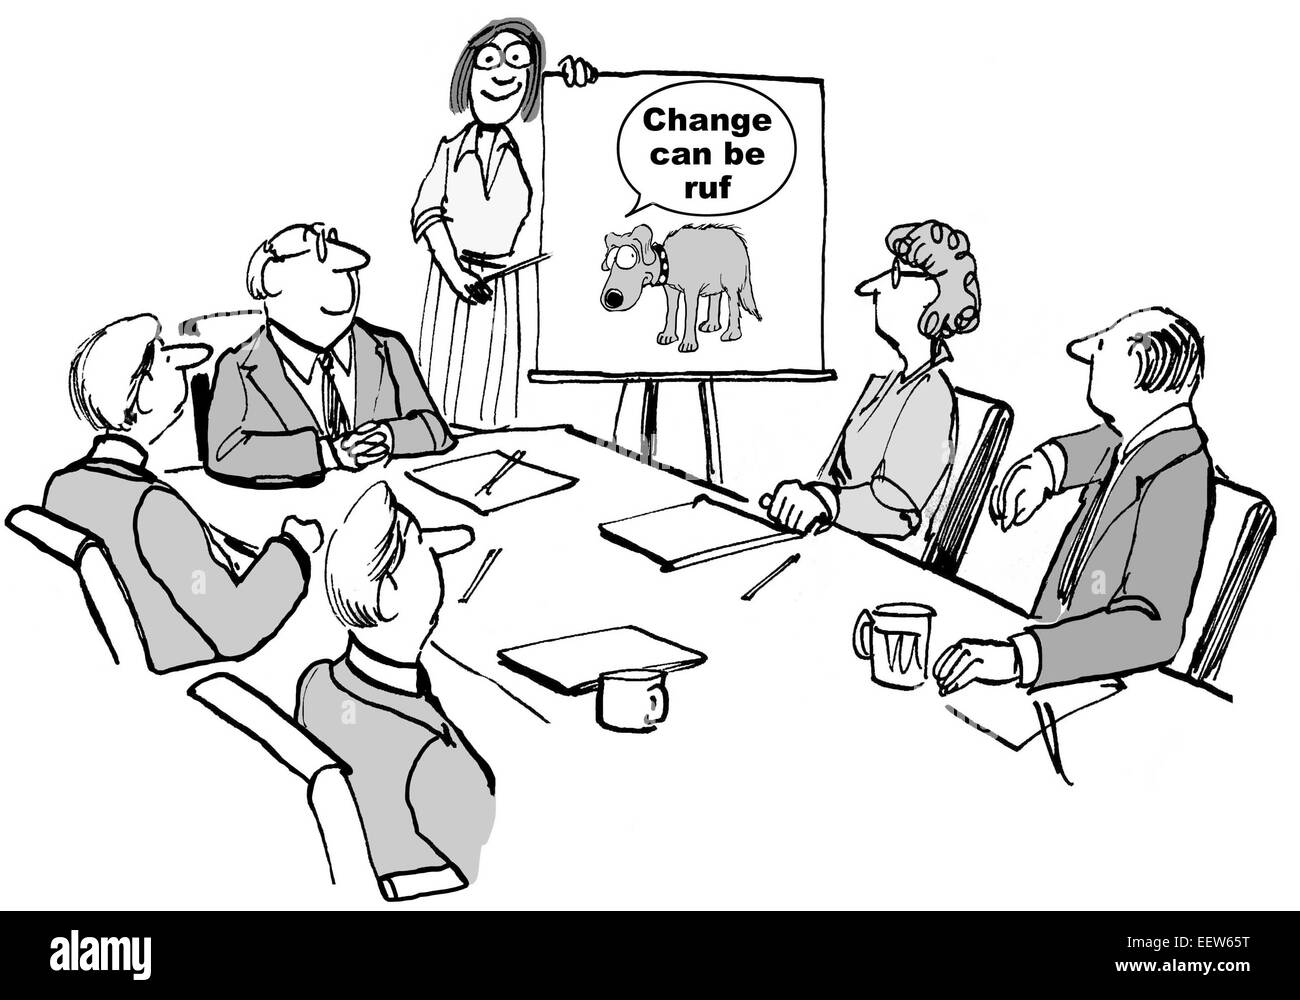 Cartoon di una imprenditrice che conduce un seminario e la condivisione che il cambiamento può essere "RUF" (grezzi). Foto Stock